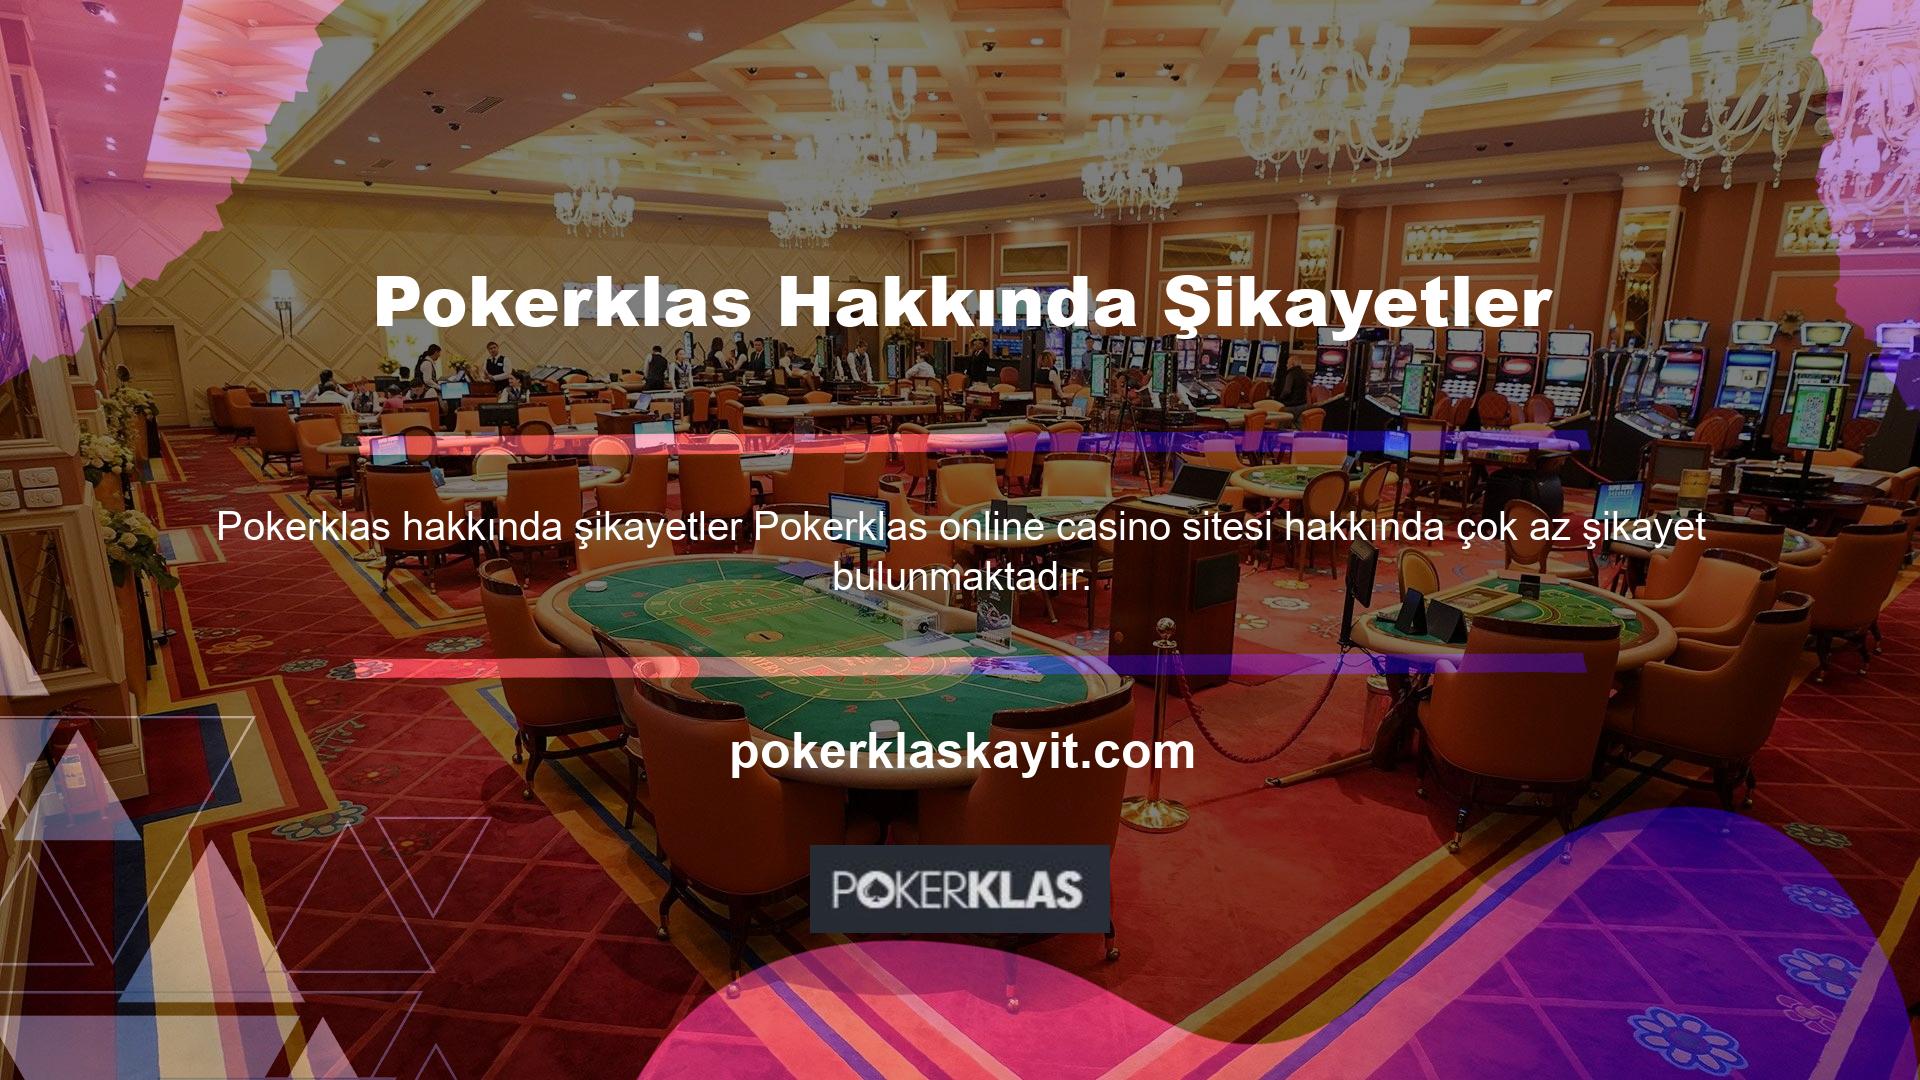 Pokerklas bahis sitesi şikayet ve sorunlara hızlı bir şekilde yanıt vermesi nedeniyle en iyi bahis sitelerinden biridir